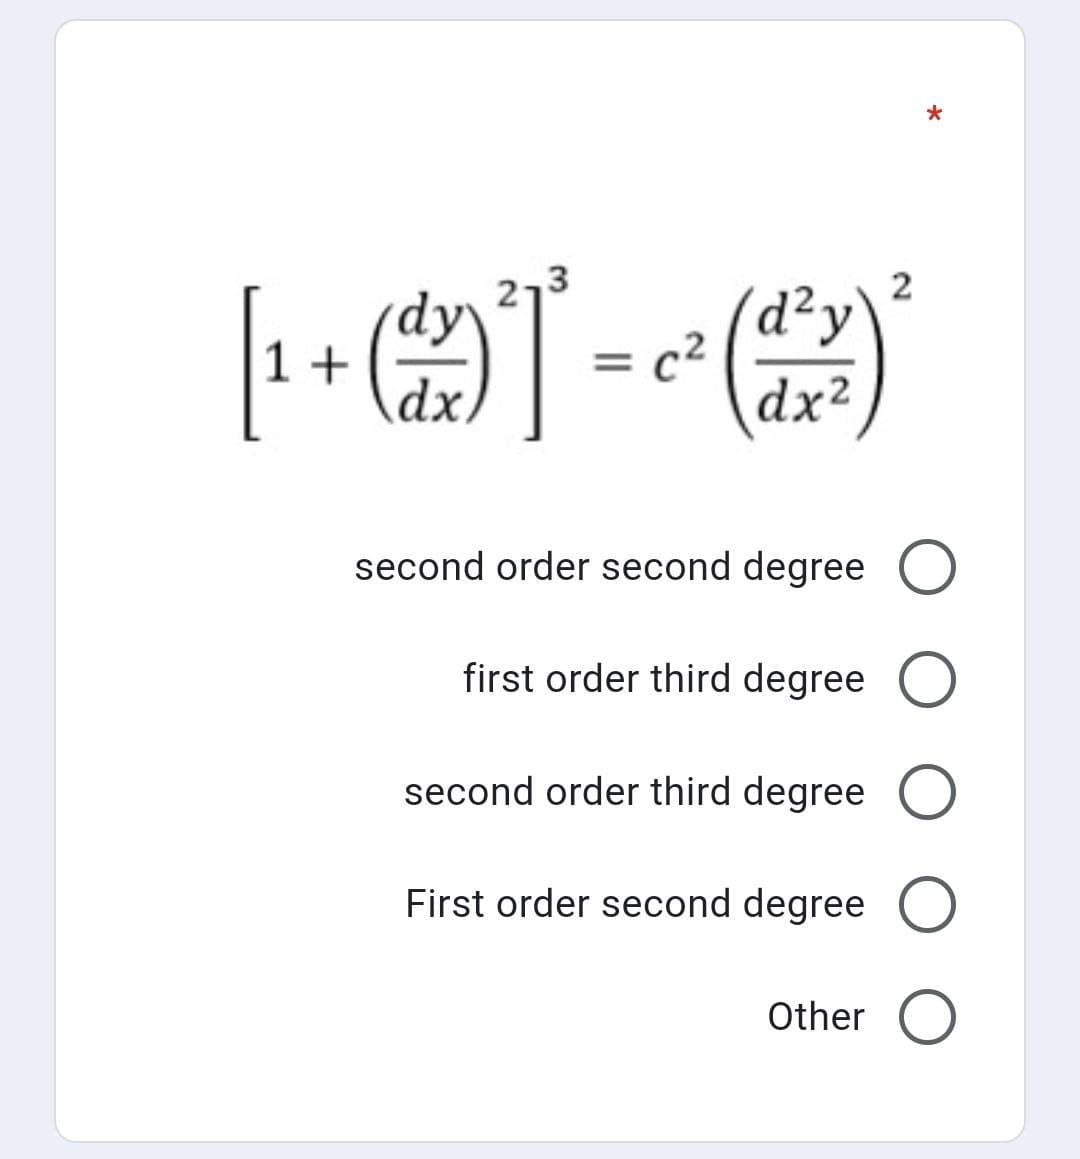 (岛T
3ך2
2
d²y
c2
dx²
1+
second order second degree O
first order third degree O
second order third degree O
First order second degree O
Other
